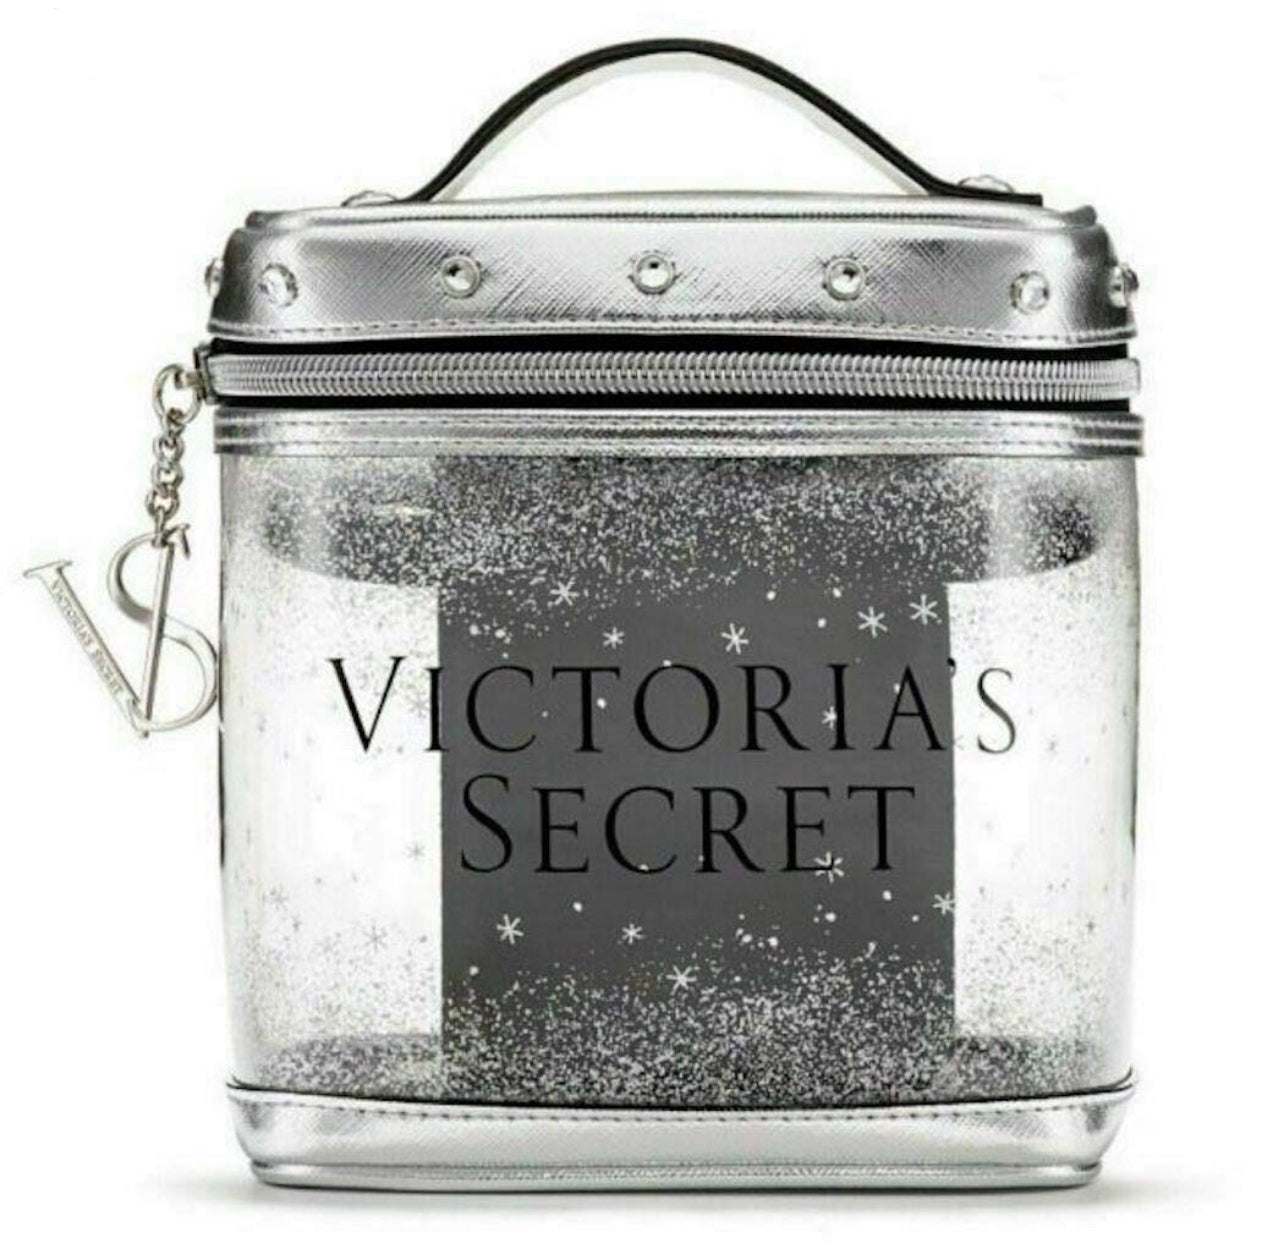 "Victoria’s Secret" Makeup bag